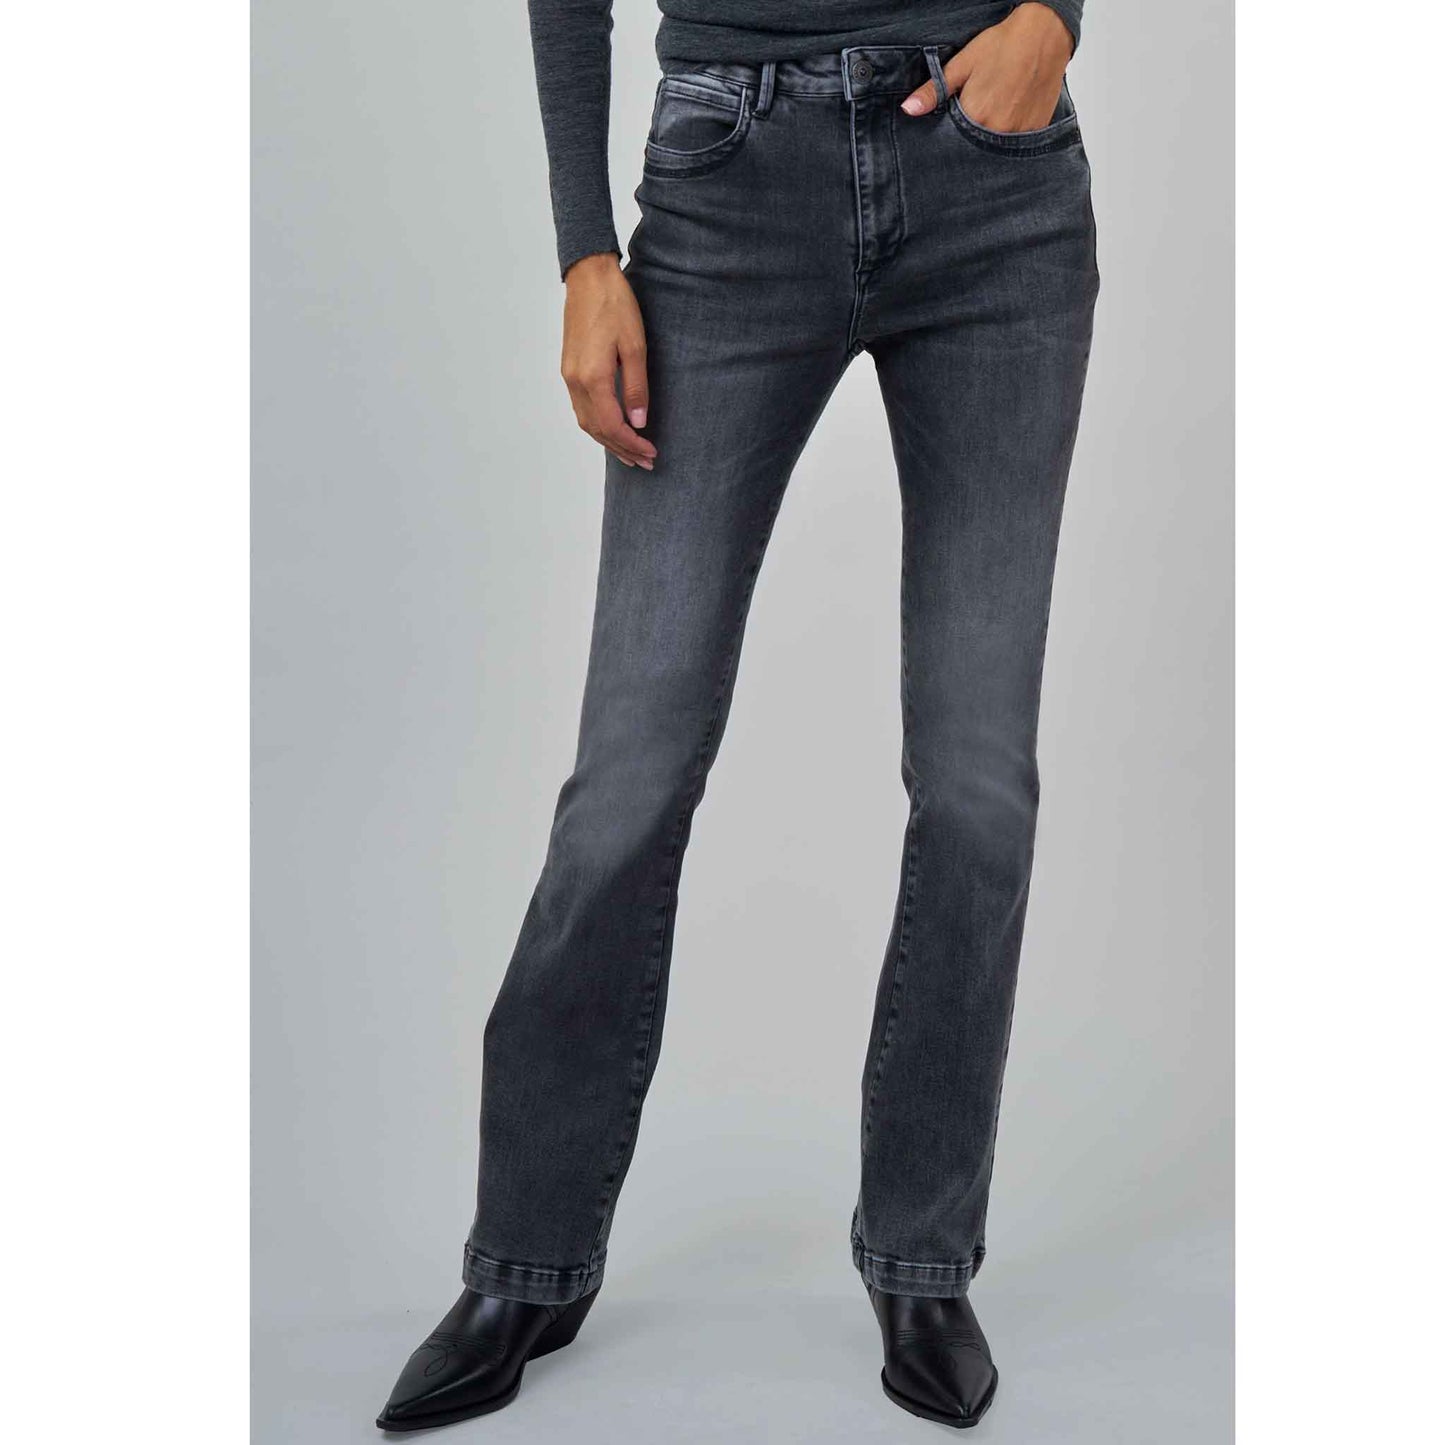 kleding lange vrouwen bluefire jeans vicky grey